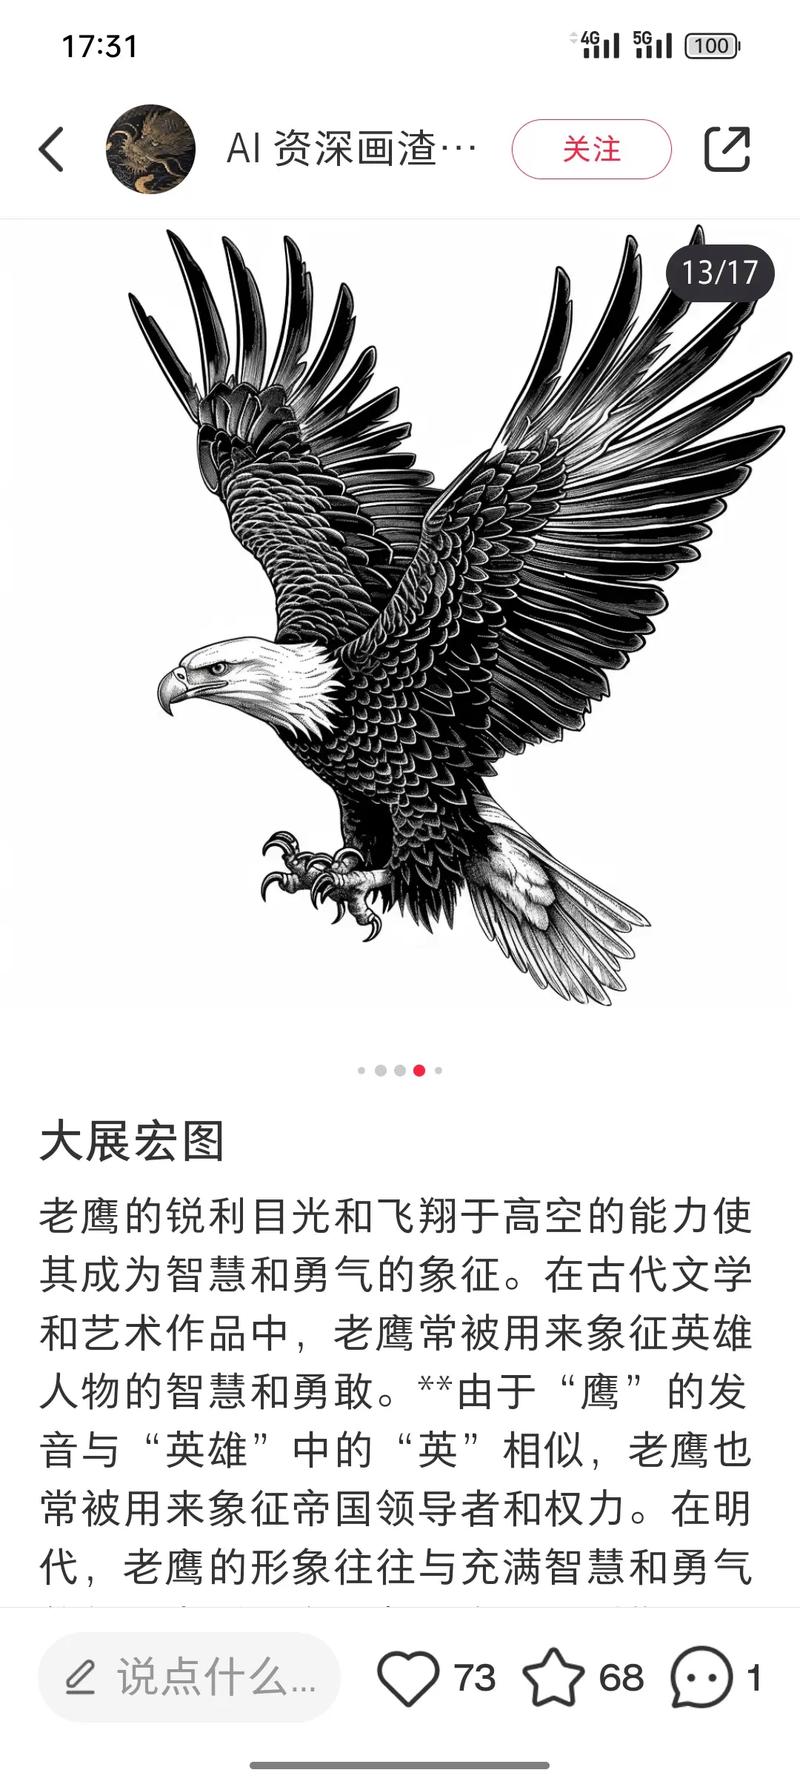 代,老鹰的形象往往与充满智慧和勇气 老鹰的锐利目光和飞翔于高 - 抖